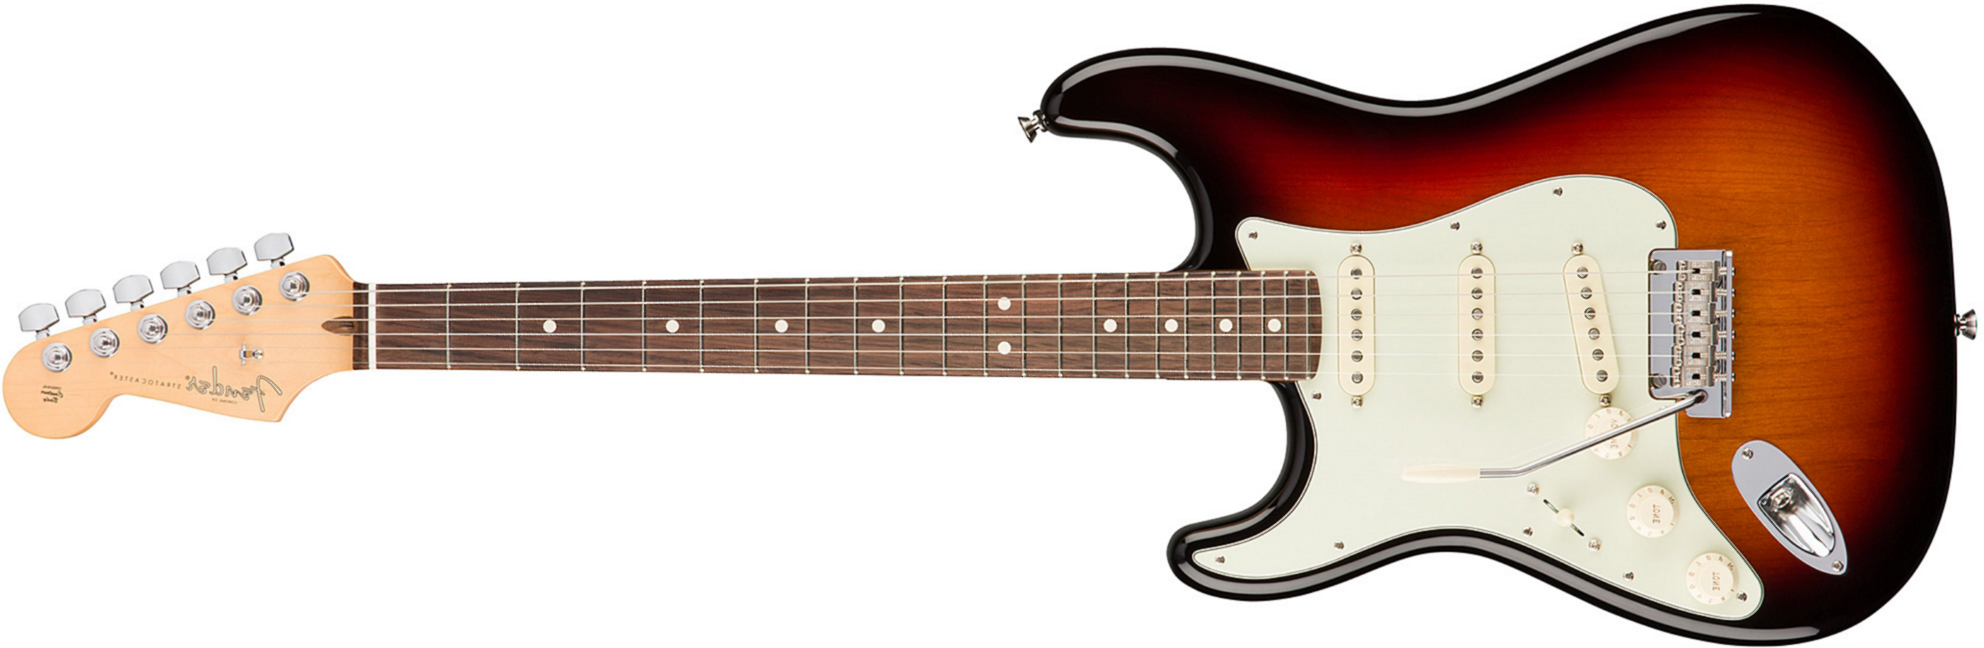 Fender Strat American Professional Lh Usa Gaucher 3s Rw - 3-color Sunburst - E-Gitarre für Linkshänder - Main picture